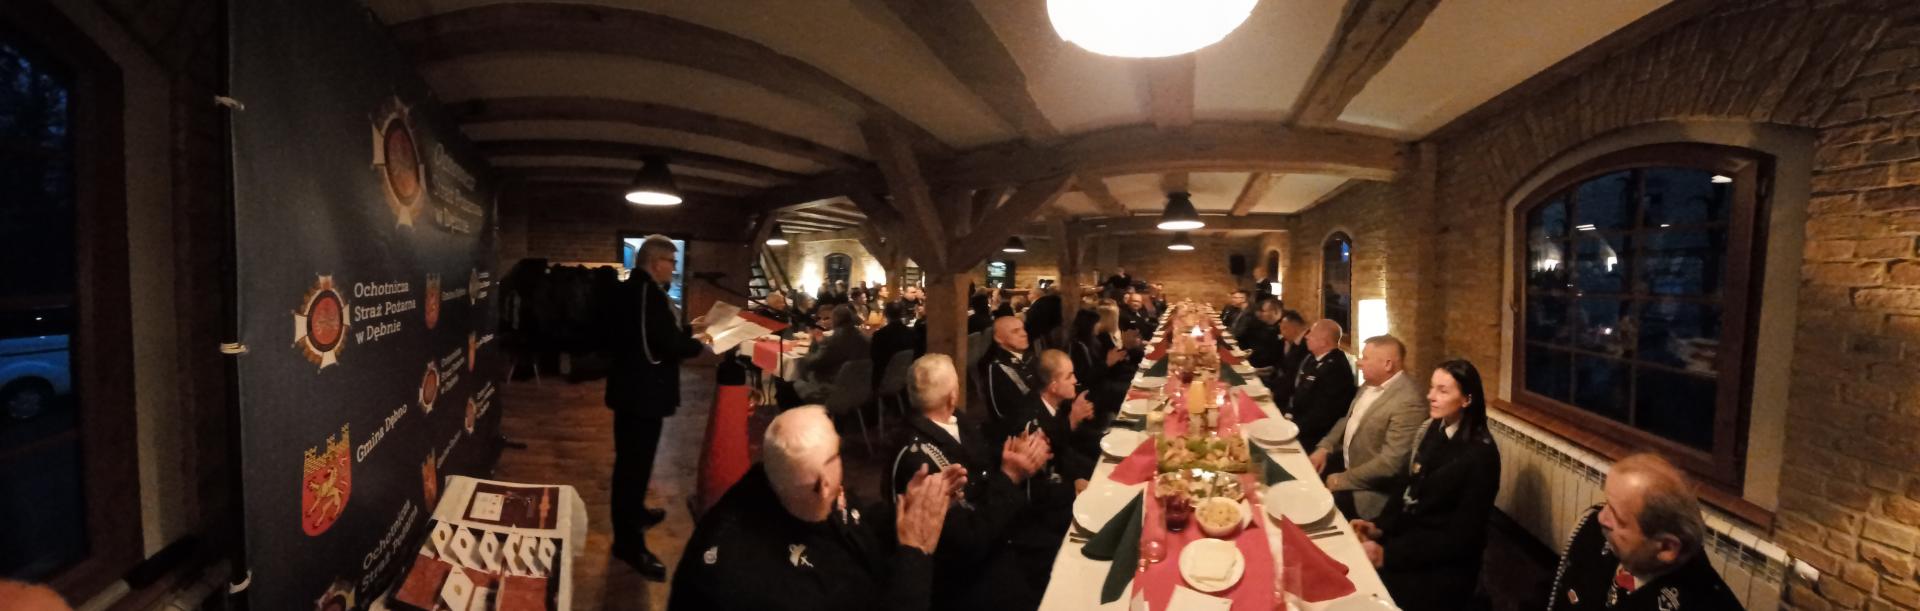 Widok na salę, przy stołach siedzą osoby w mundurach, przy mównicy stoi prezes Tadeusz Nowak 